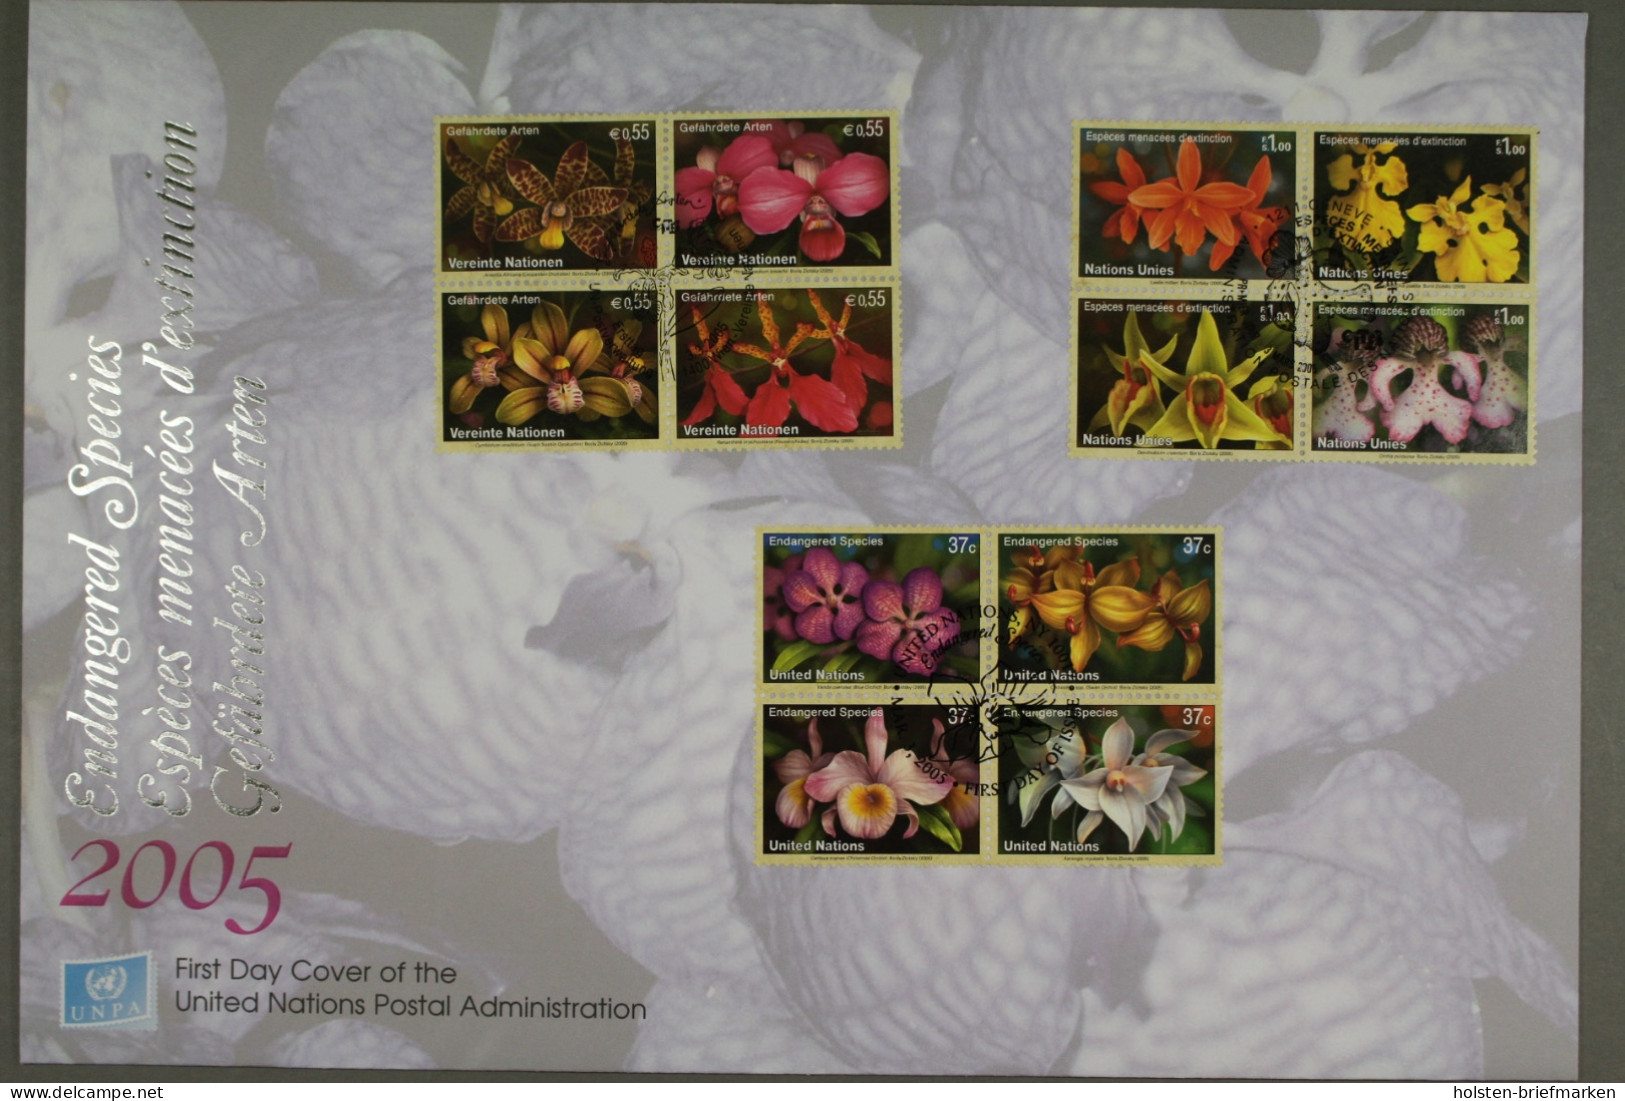 UNO Triobrief: Gefährdete Arten: Orchideen, 2005 - Emissioni Congiunte New York/Ginevra/Vienna